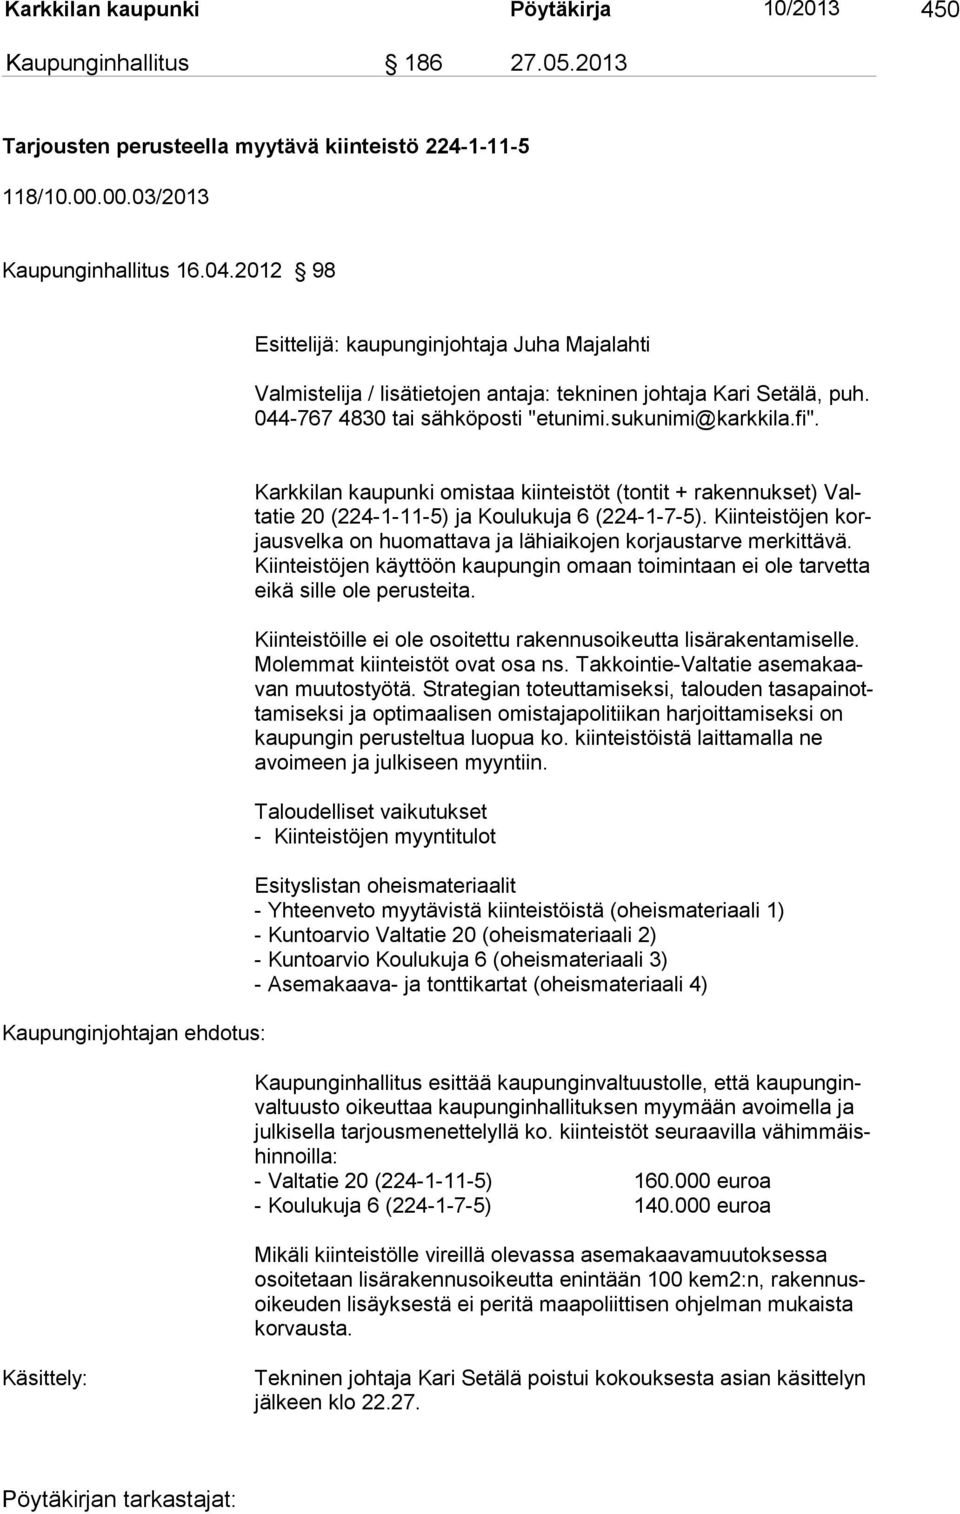 Kaupunginjohtajan ehdotus: Karkkilan kaupunki omistaa kiinteistöt (tontit + rakennukset) Valtatie 20 (224-1-11-5) ja Koulukuja 6 (224-1-7-5).